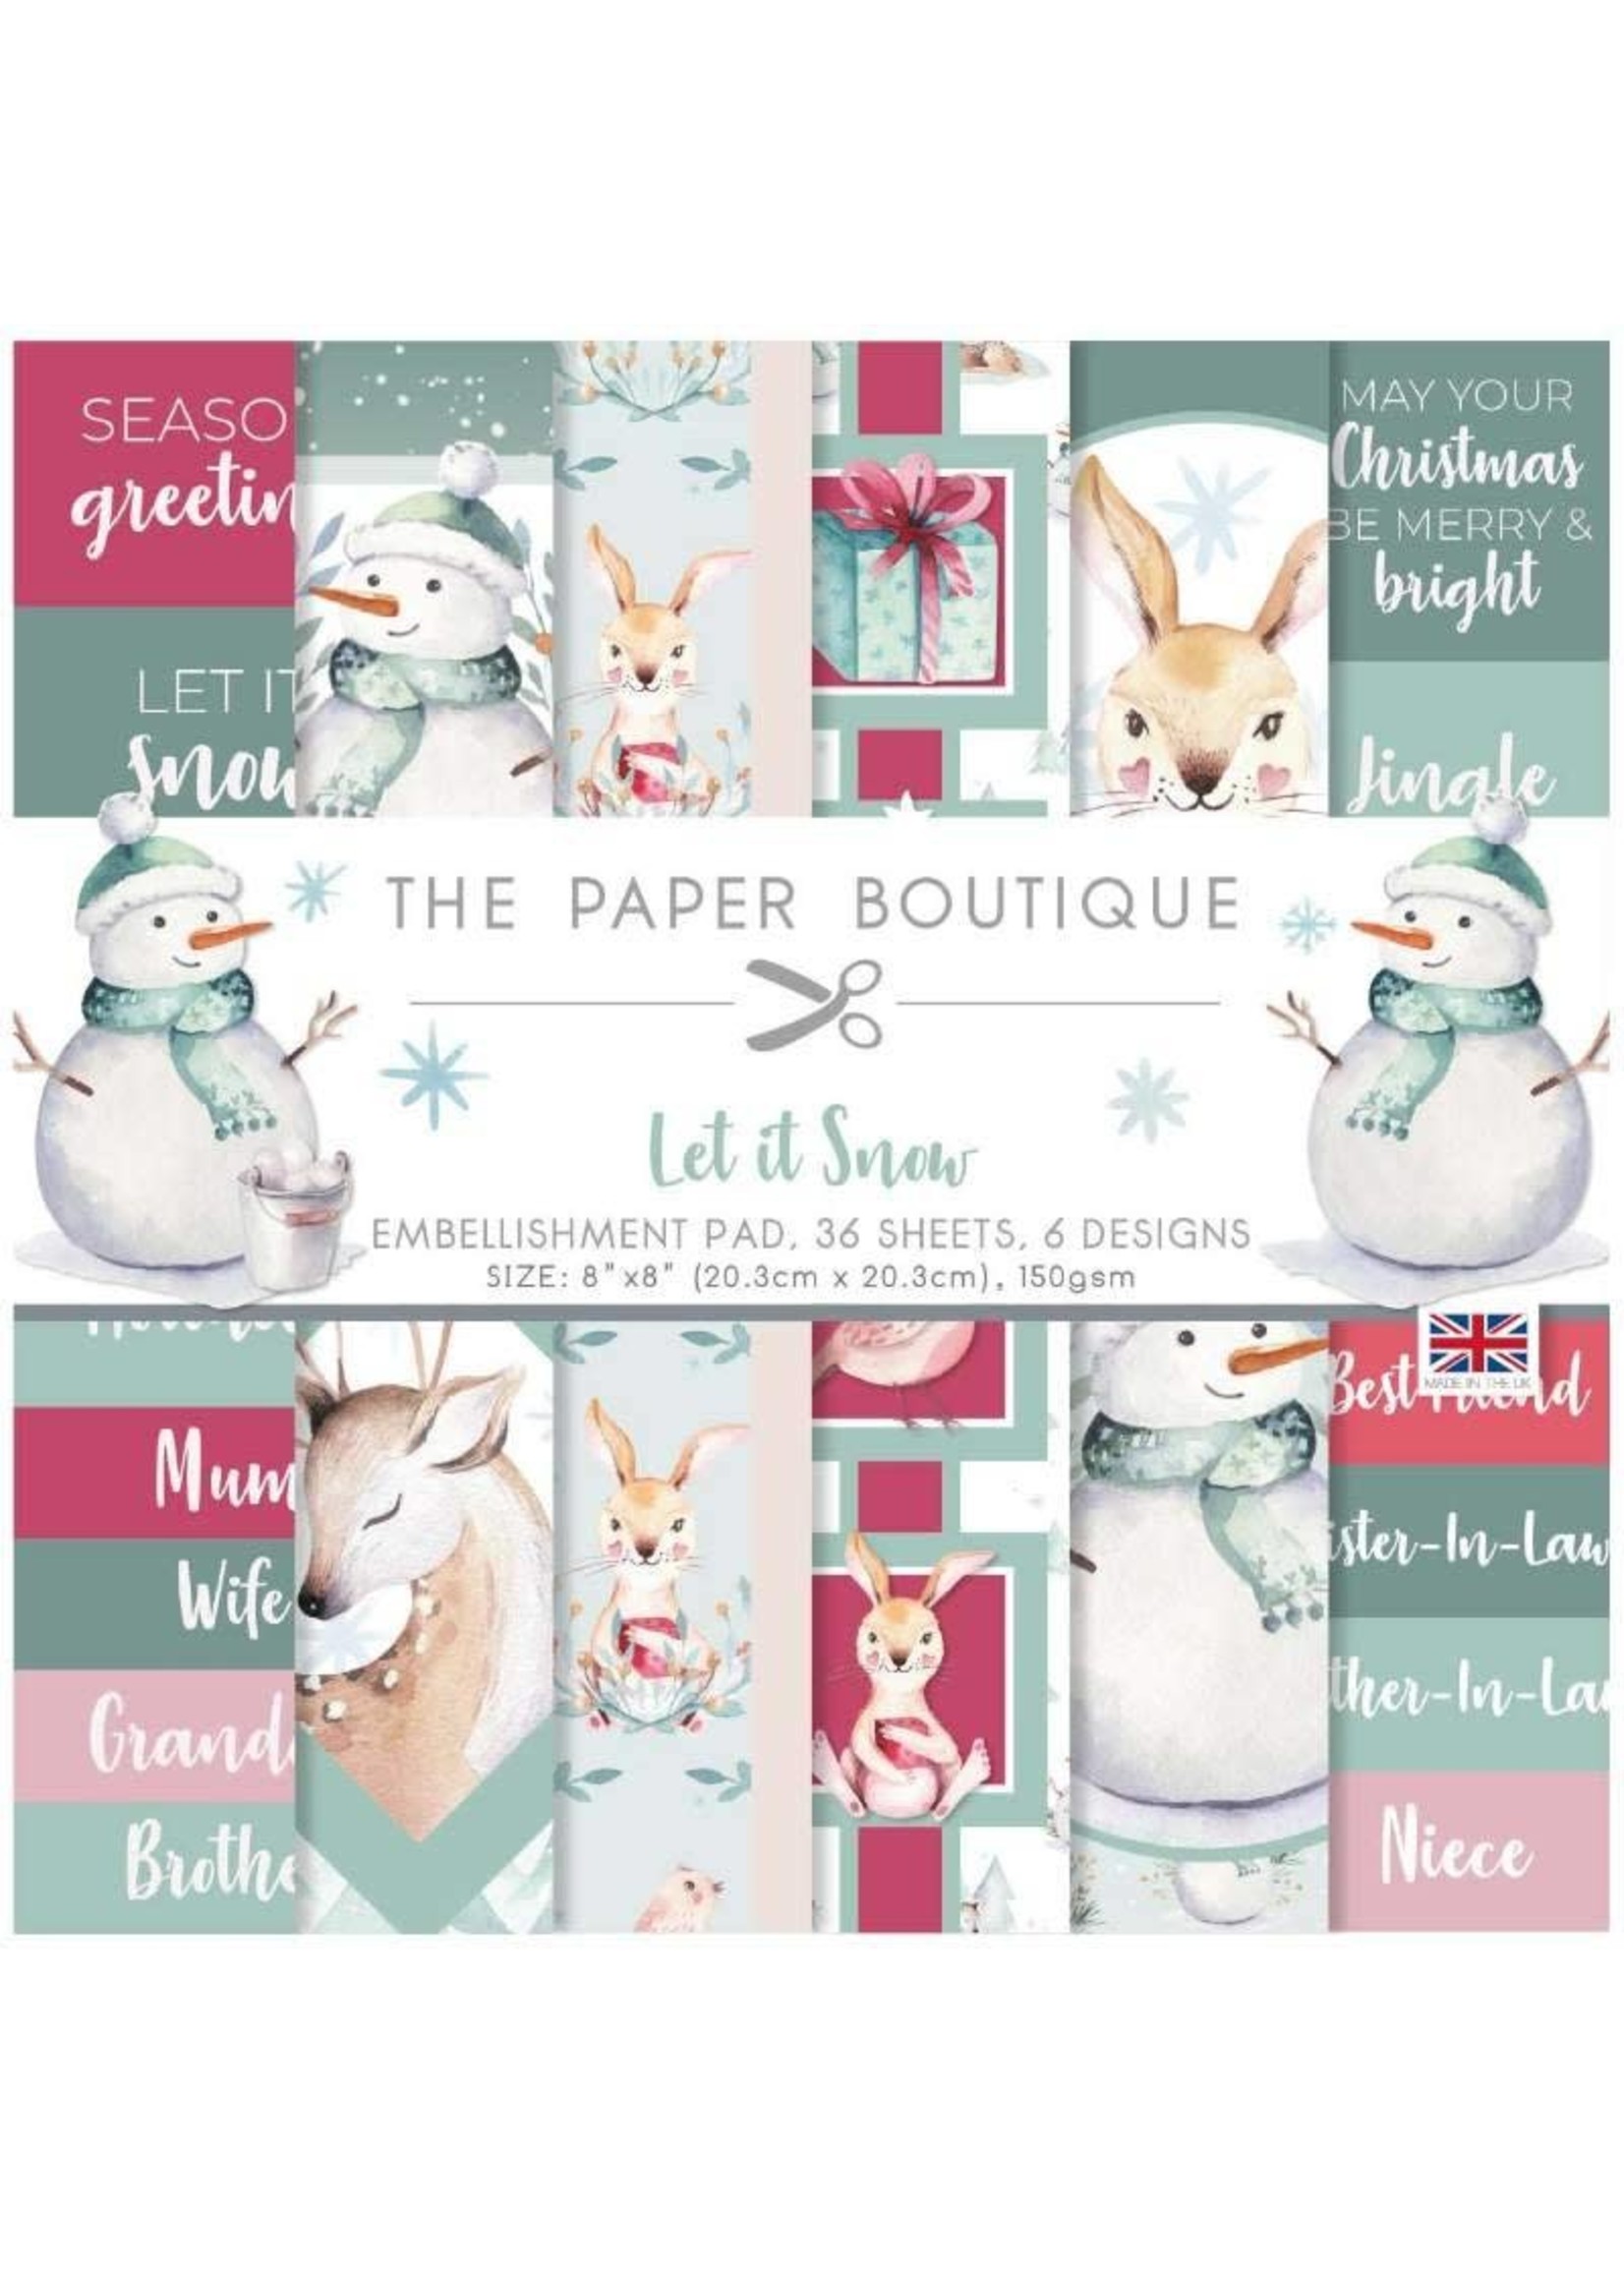 The Paper Boutique Let it Snow Embellishment Pad